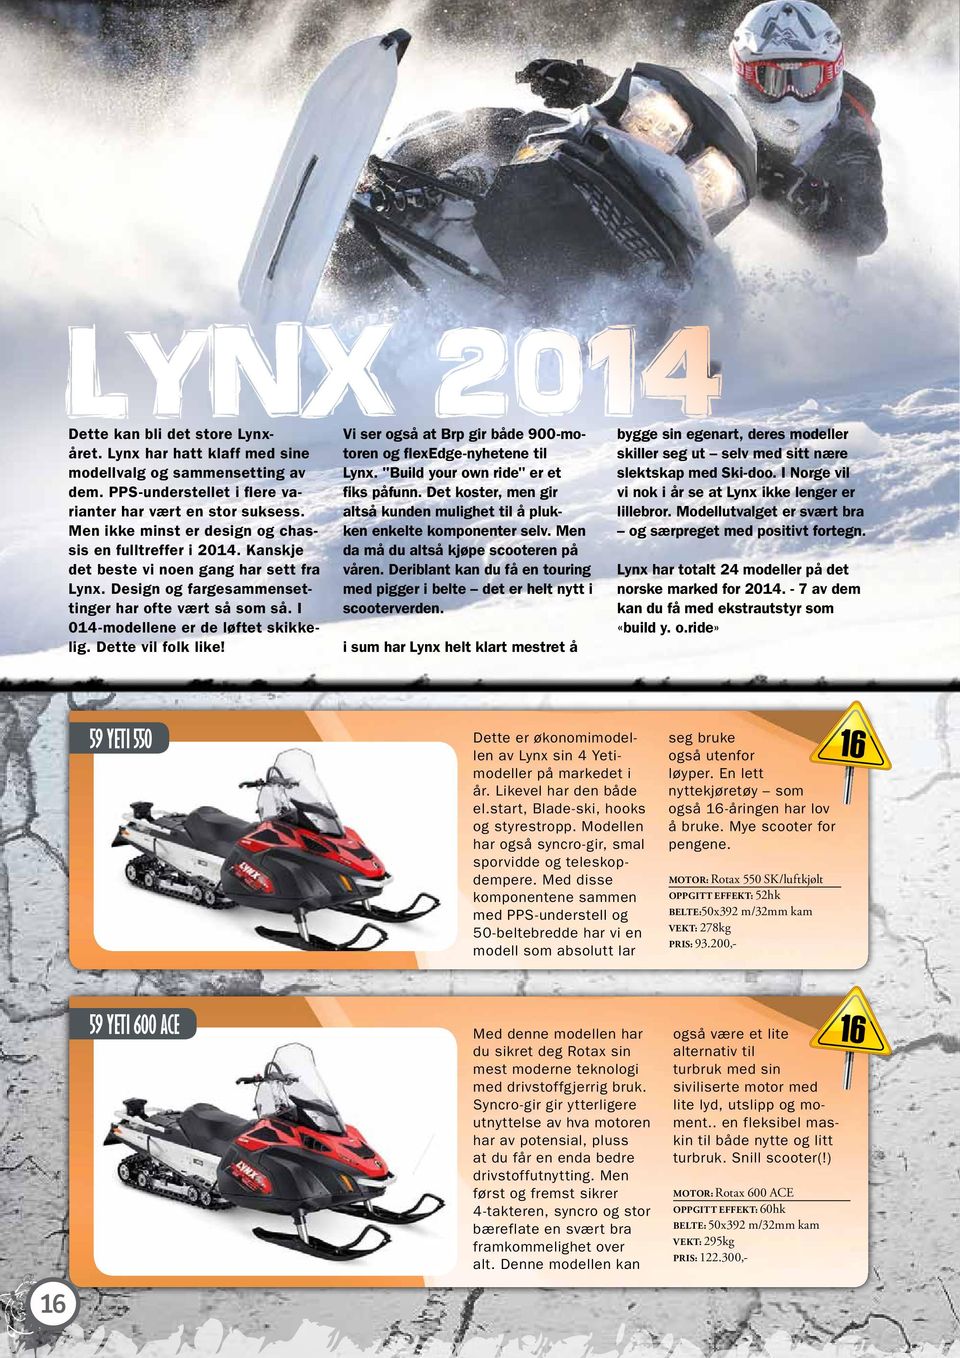 I 014-modellene er de løftet skikkelig. Dette vil folk like! Vi ser også at Brp gir både 900-motoren og flexedge-nyhetene til Lynx. "Build your own ride" er et fiks påfunn.